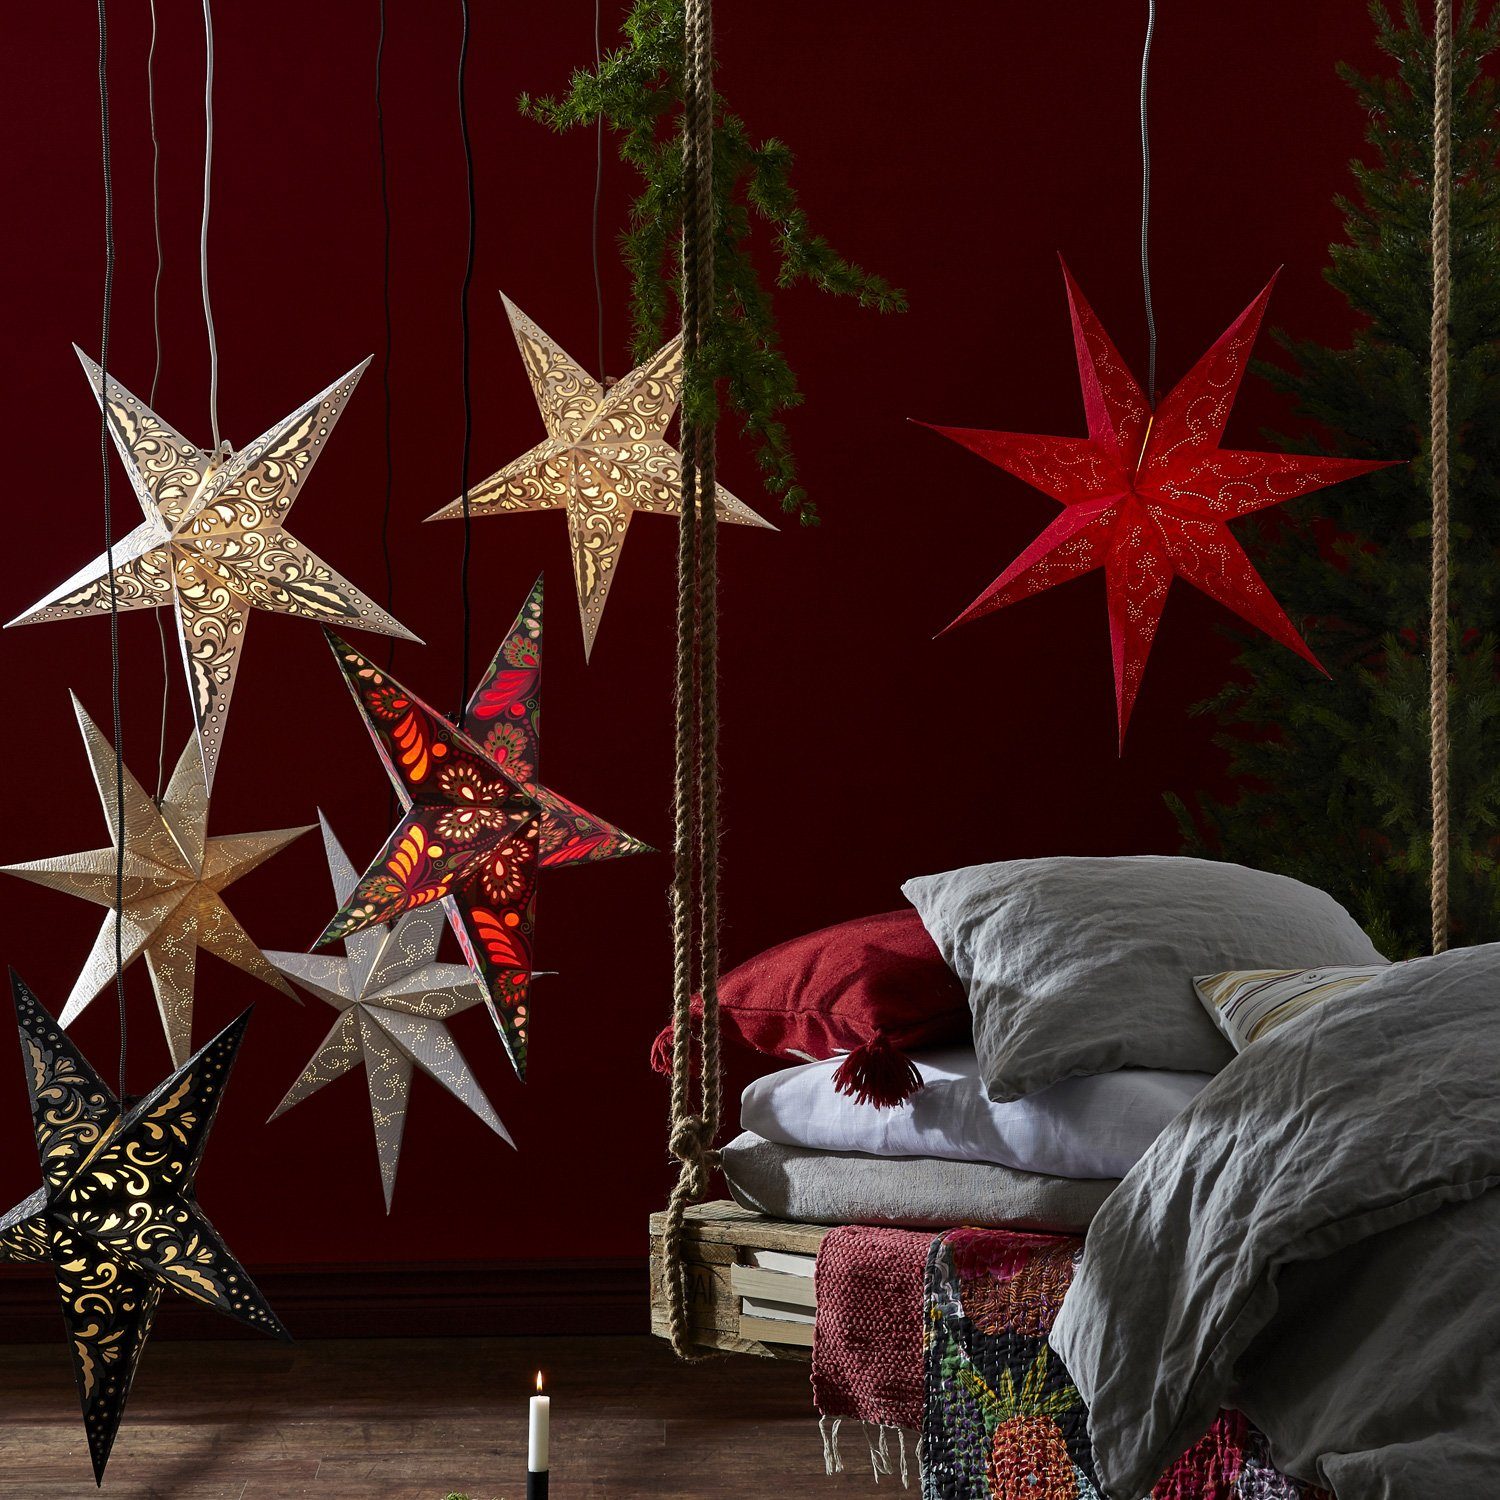 D: Weihnachtsstern Leuchtstern TRADING LED STAR hängend Stern Decorus silber Papierstern 63cm